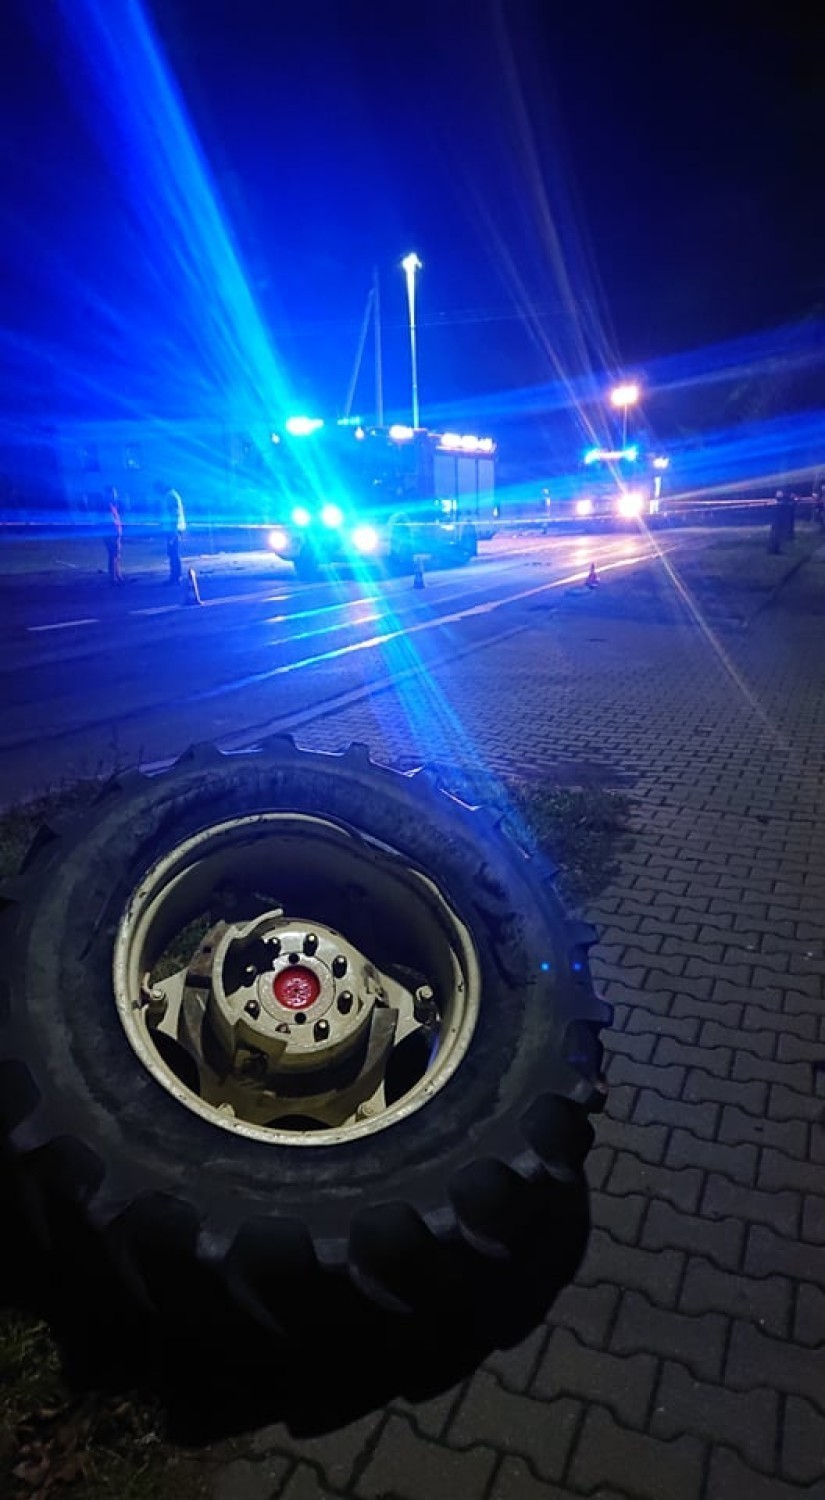 Grudzień 2019 r. W wypadku w Białej zginął 57-letni kierowca ciągnika rolniczego